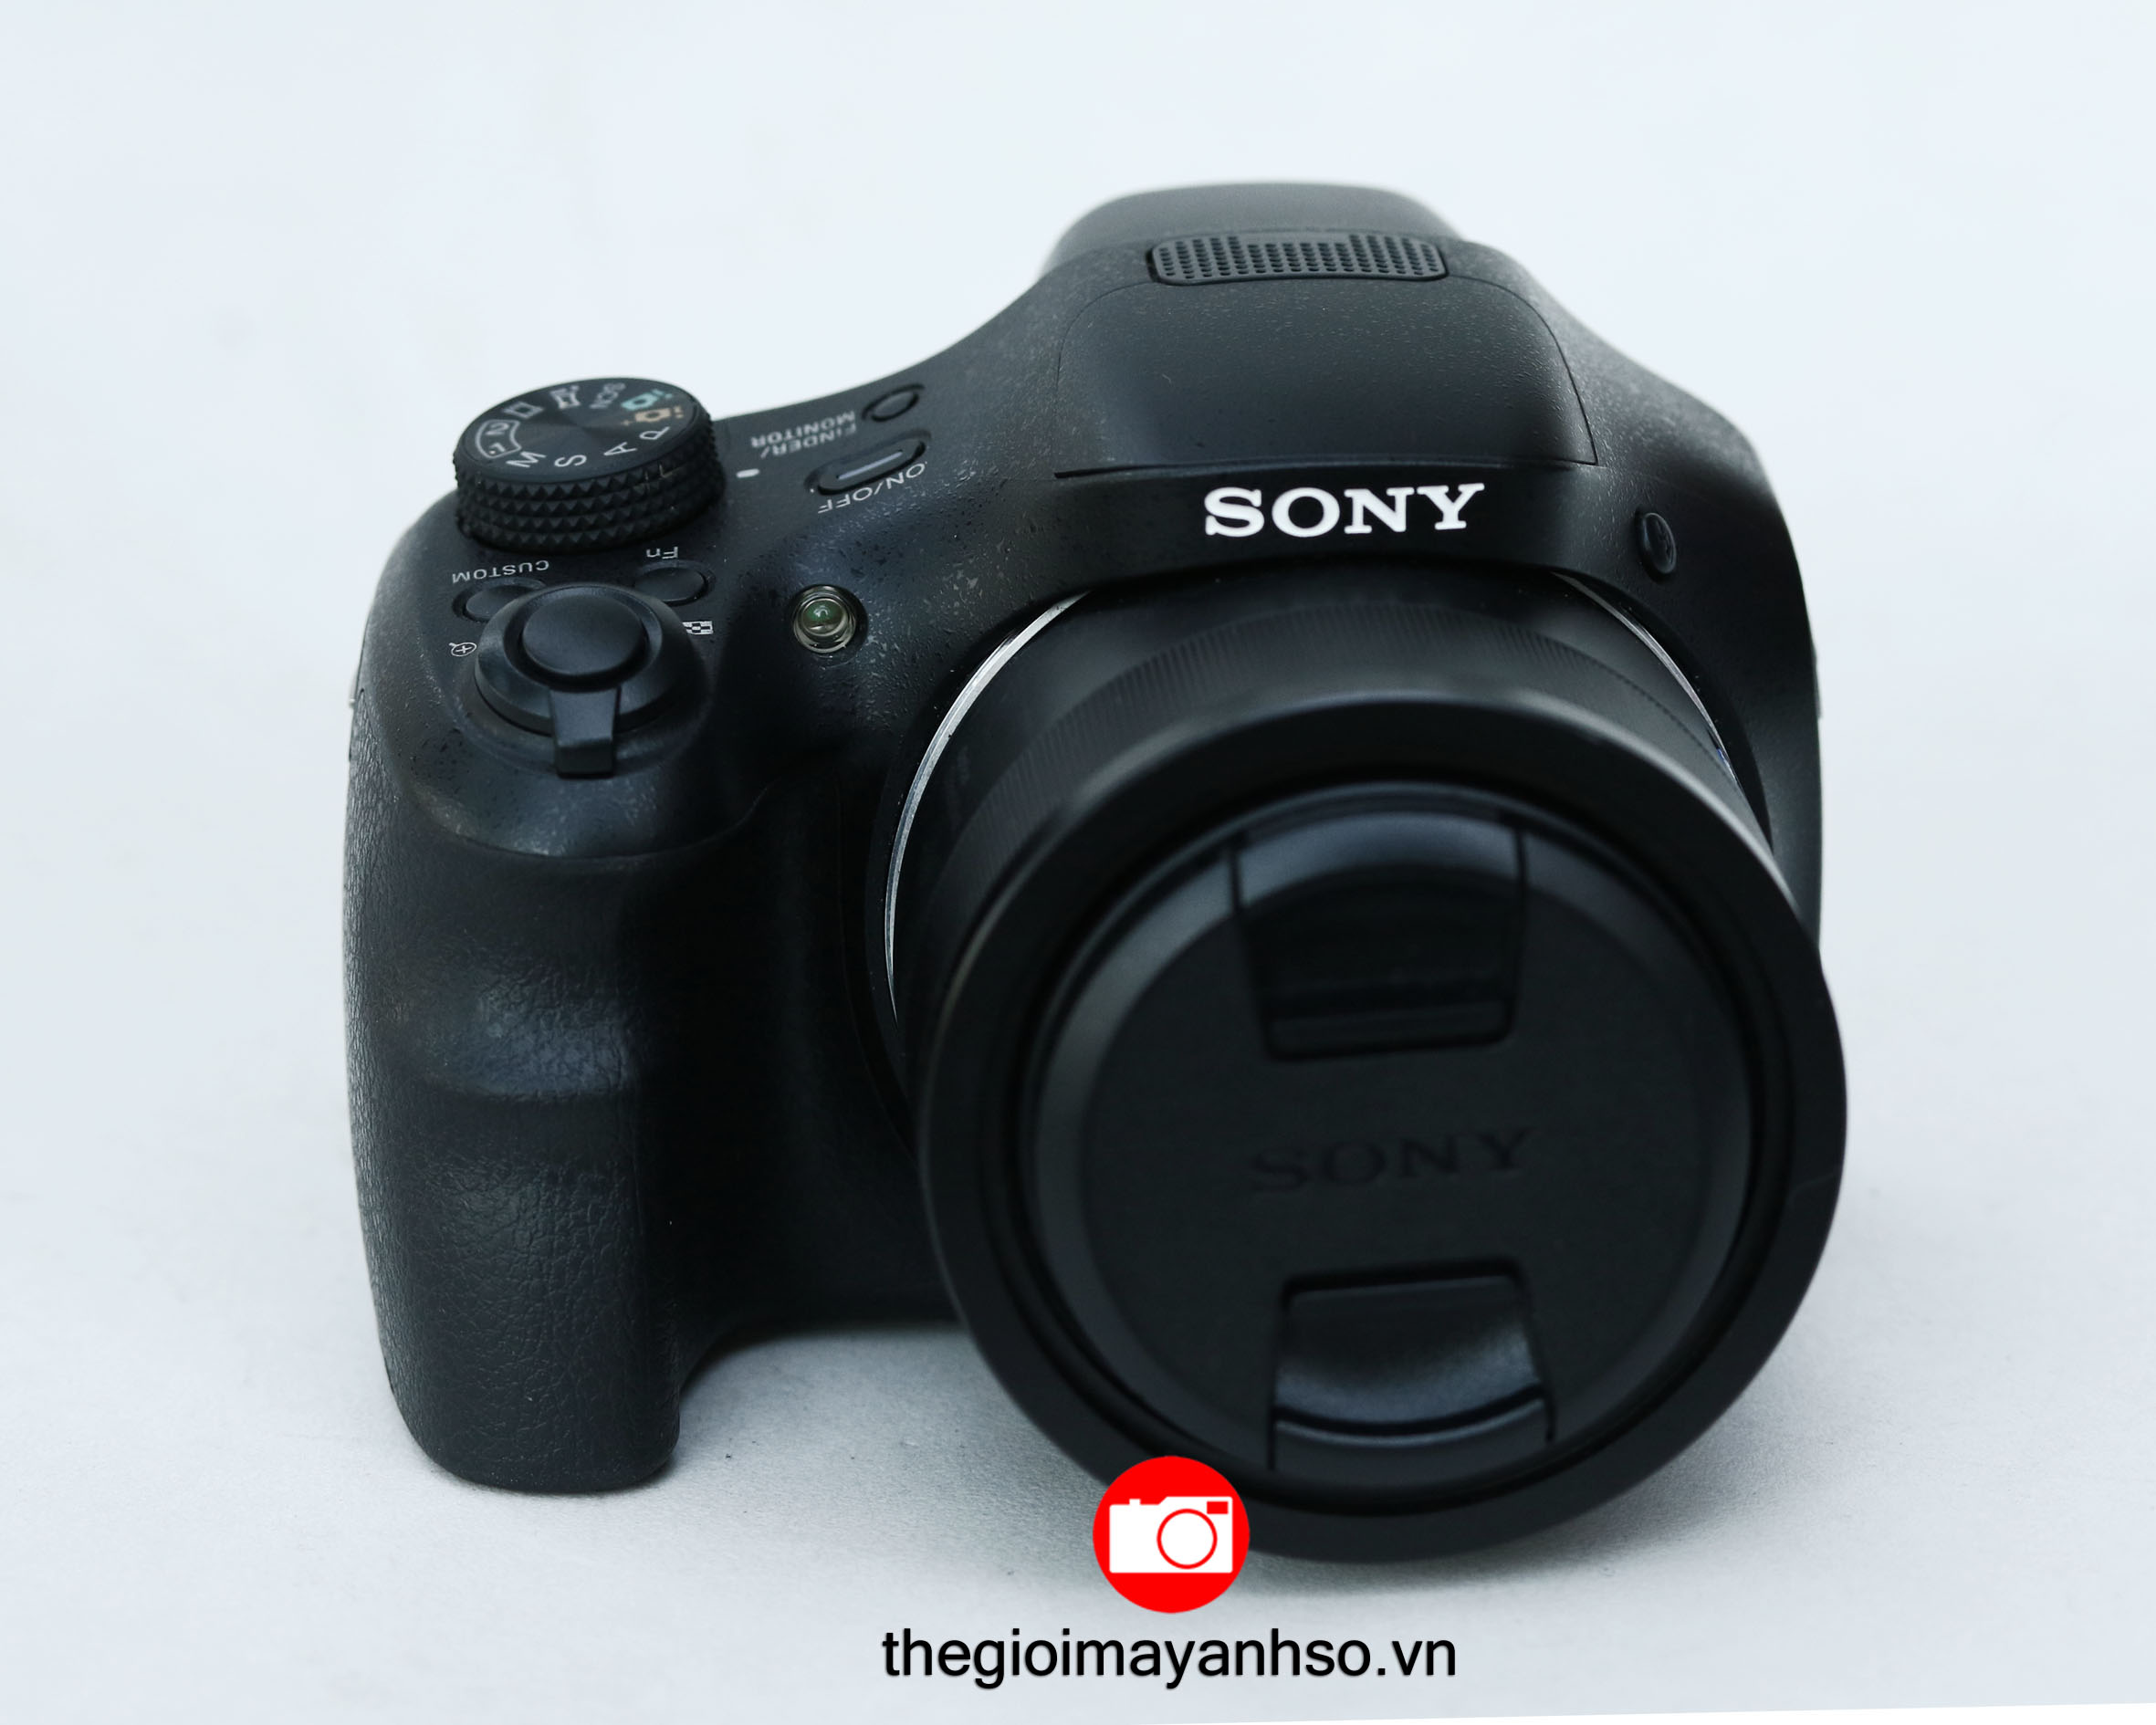 Sony Cybershot DSC-HX350